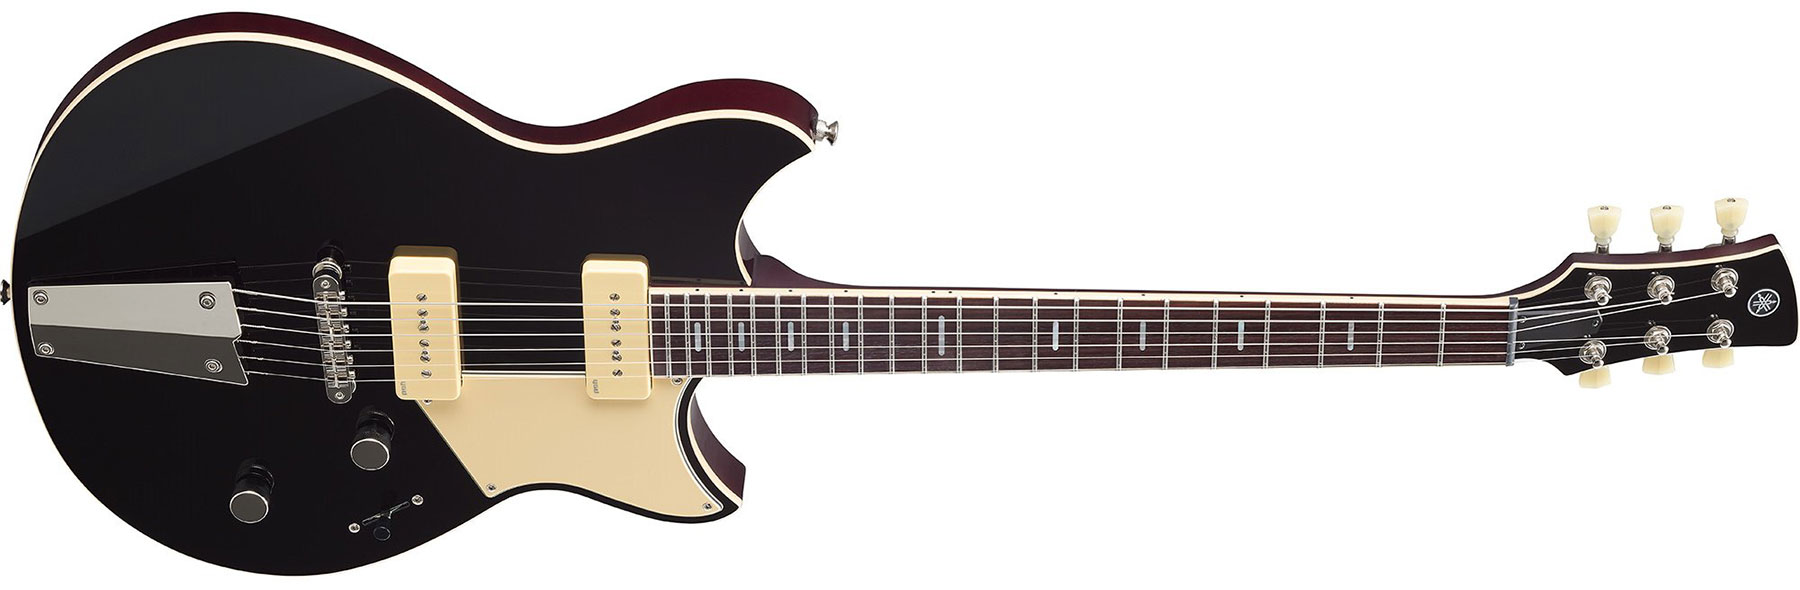 Yamaha Rss02t Revstar Standard 2p90 Ht Rw - Black - Guitarra eléctrica de doble corte. - Variation 1